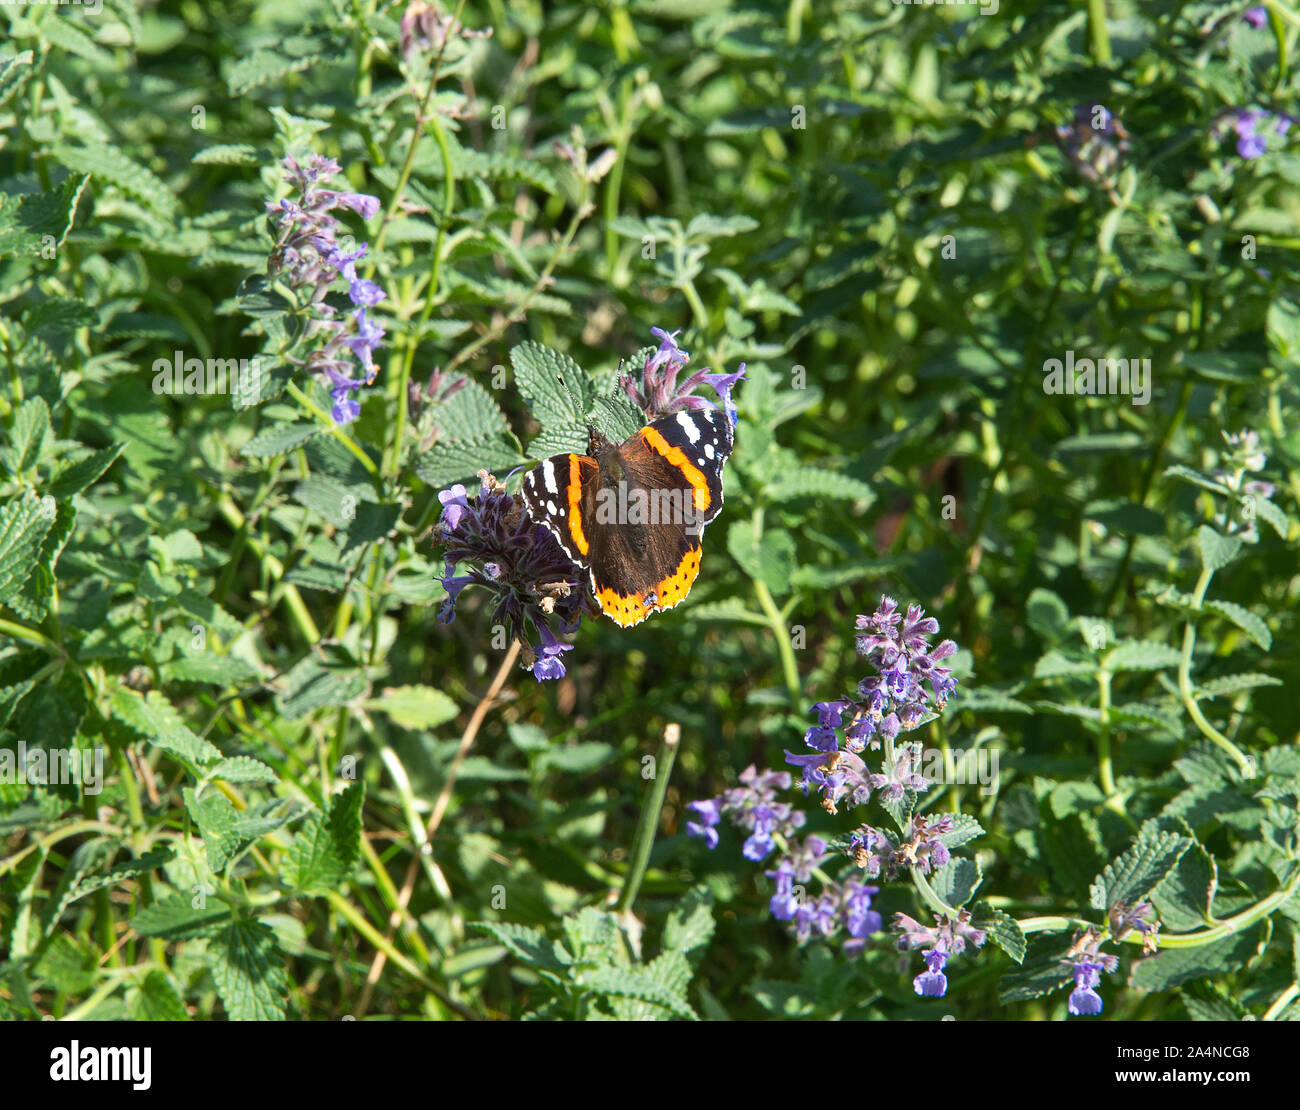 Un bel amiral rouge papillon nourrissante sur Nectar sur une tête de fleur de menthe dans un jardin à Sawdon North Yorkshire Angleterre Royaume-Uni Banque D'Images